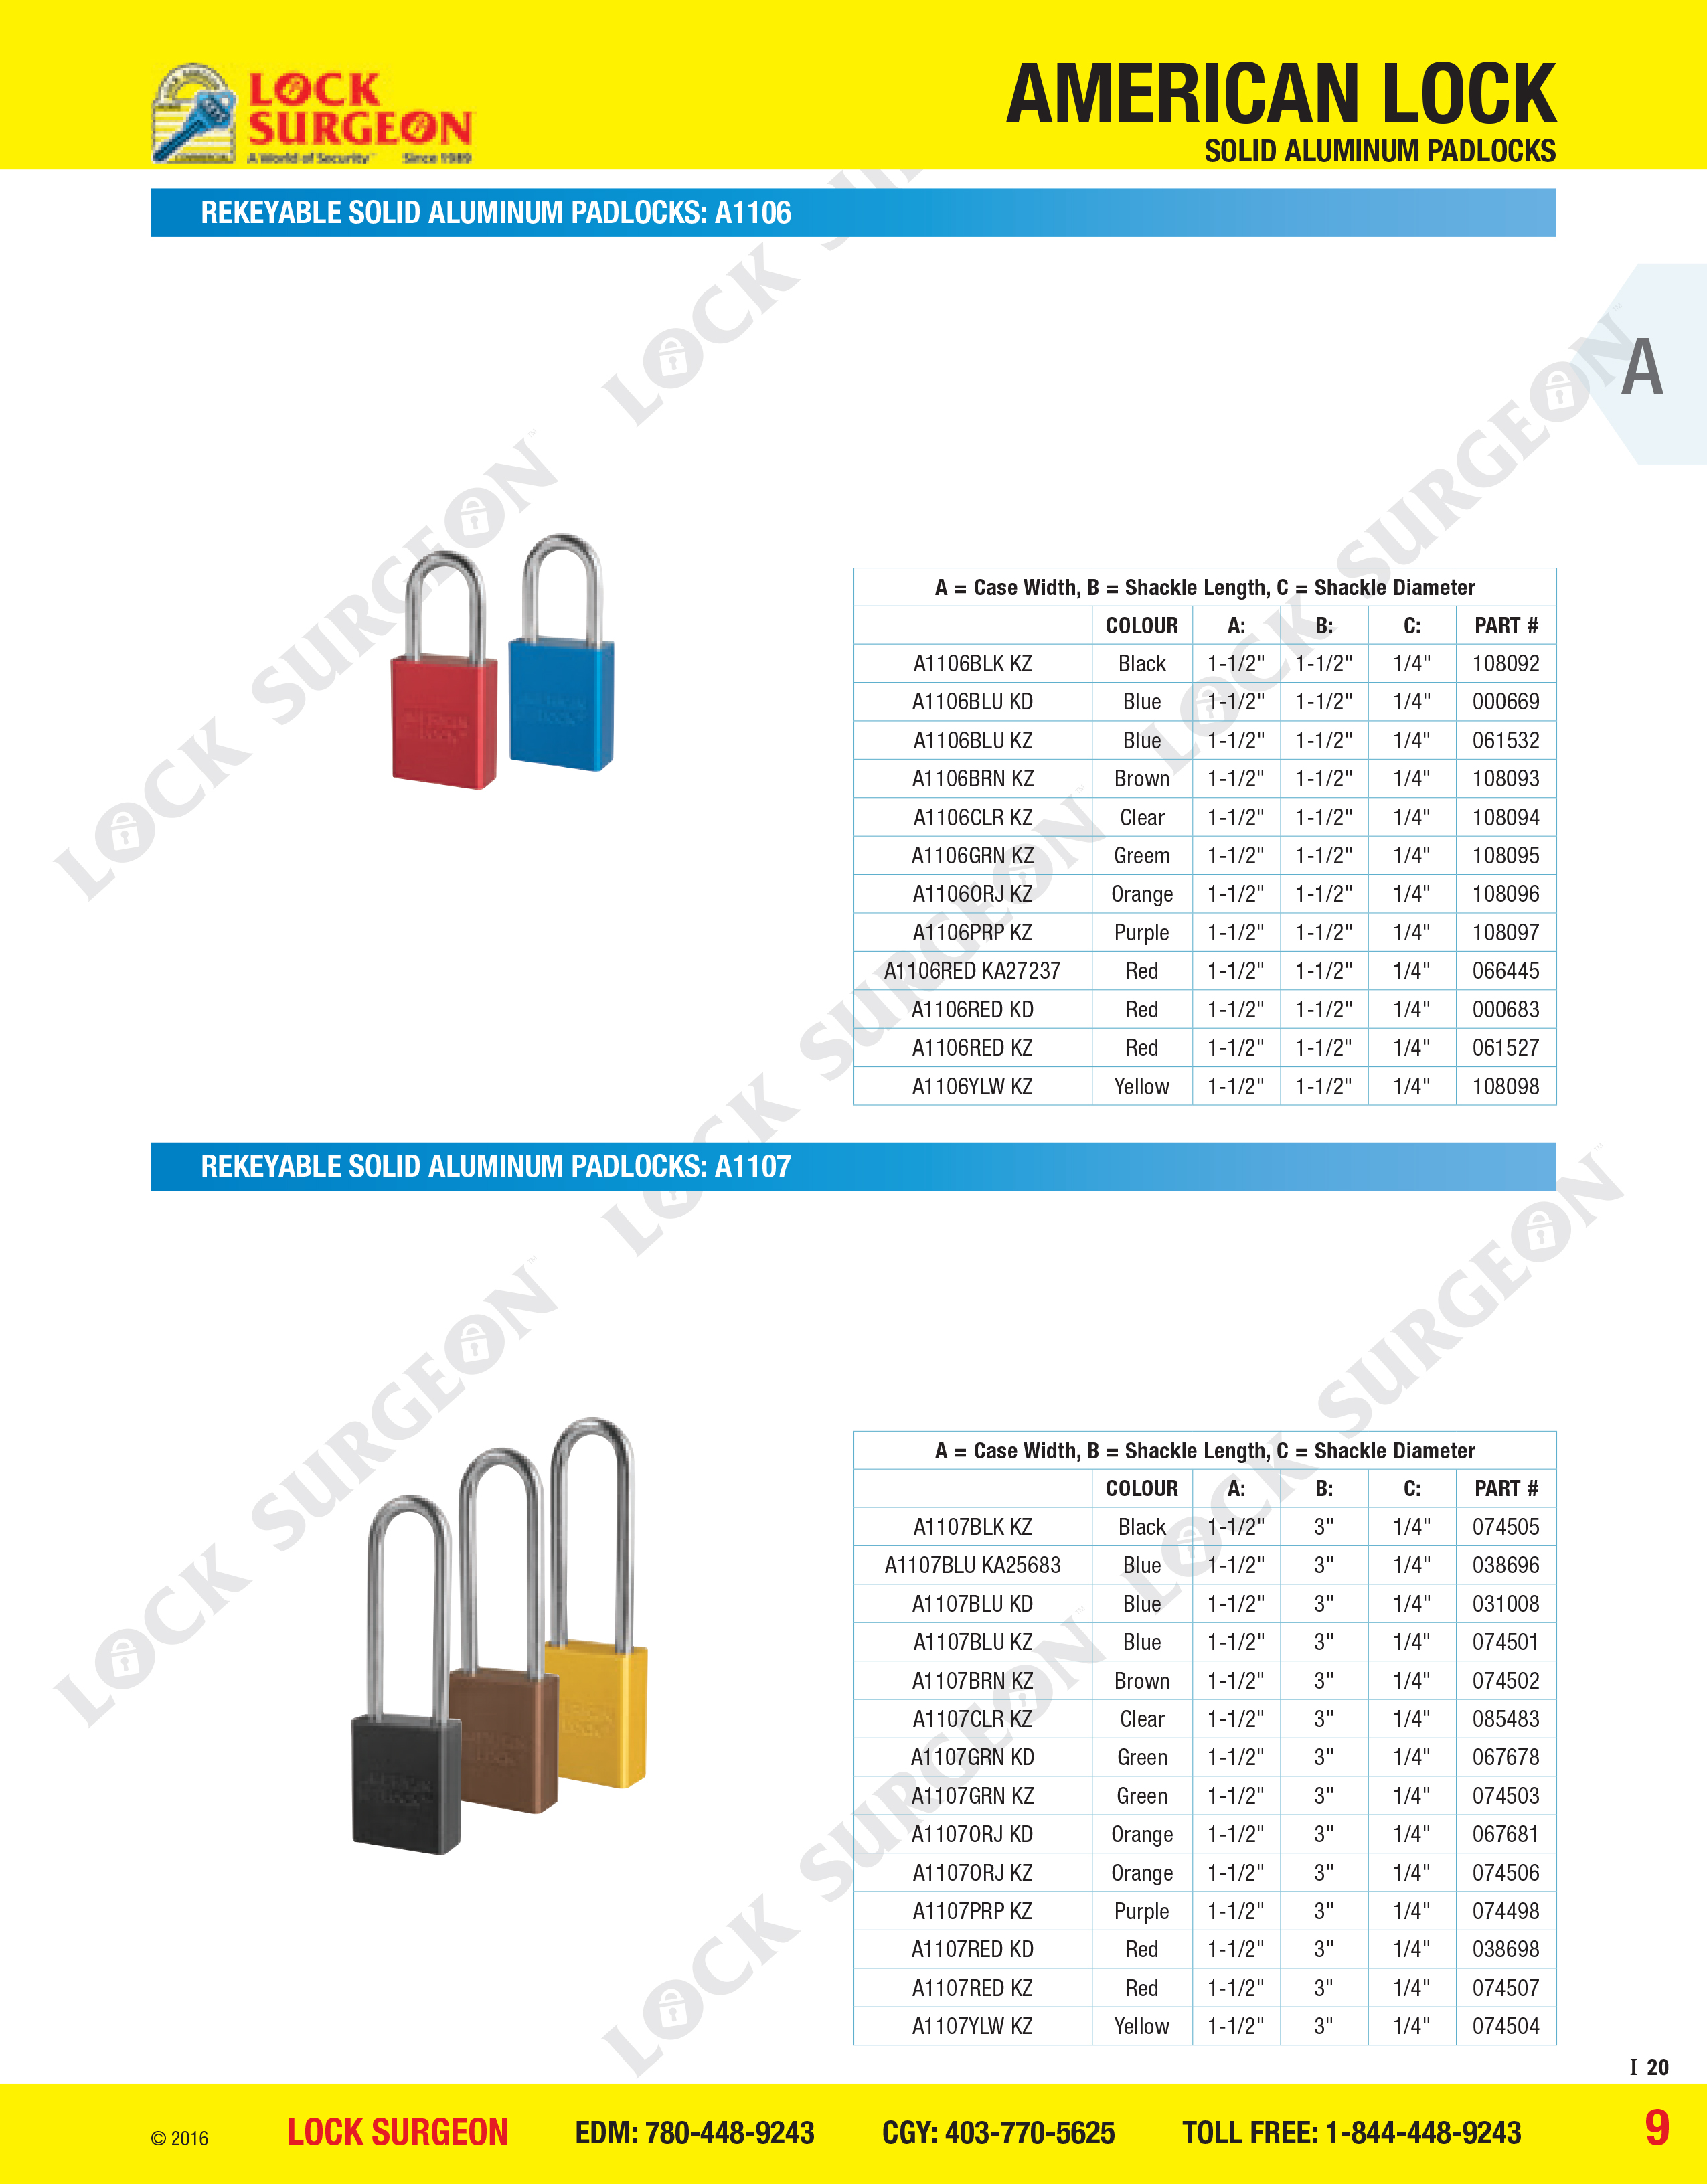 Rekeyable solid aluminium padlocks A1106 or A1107 series